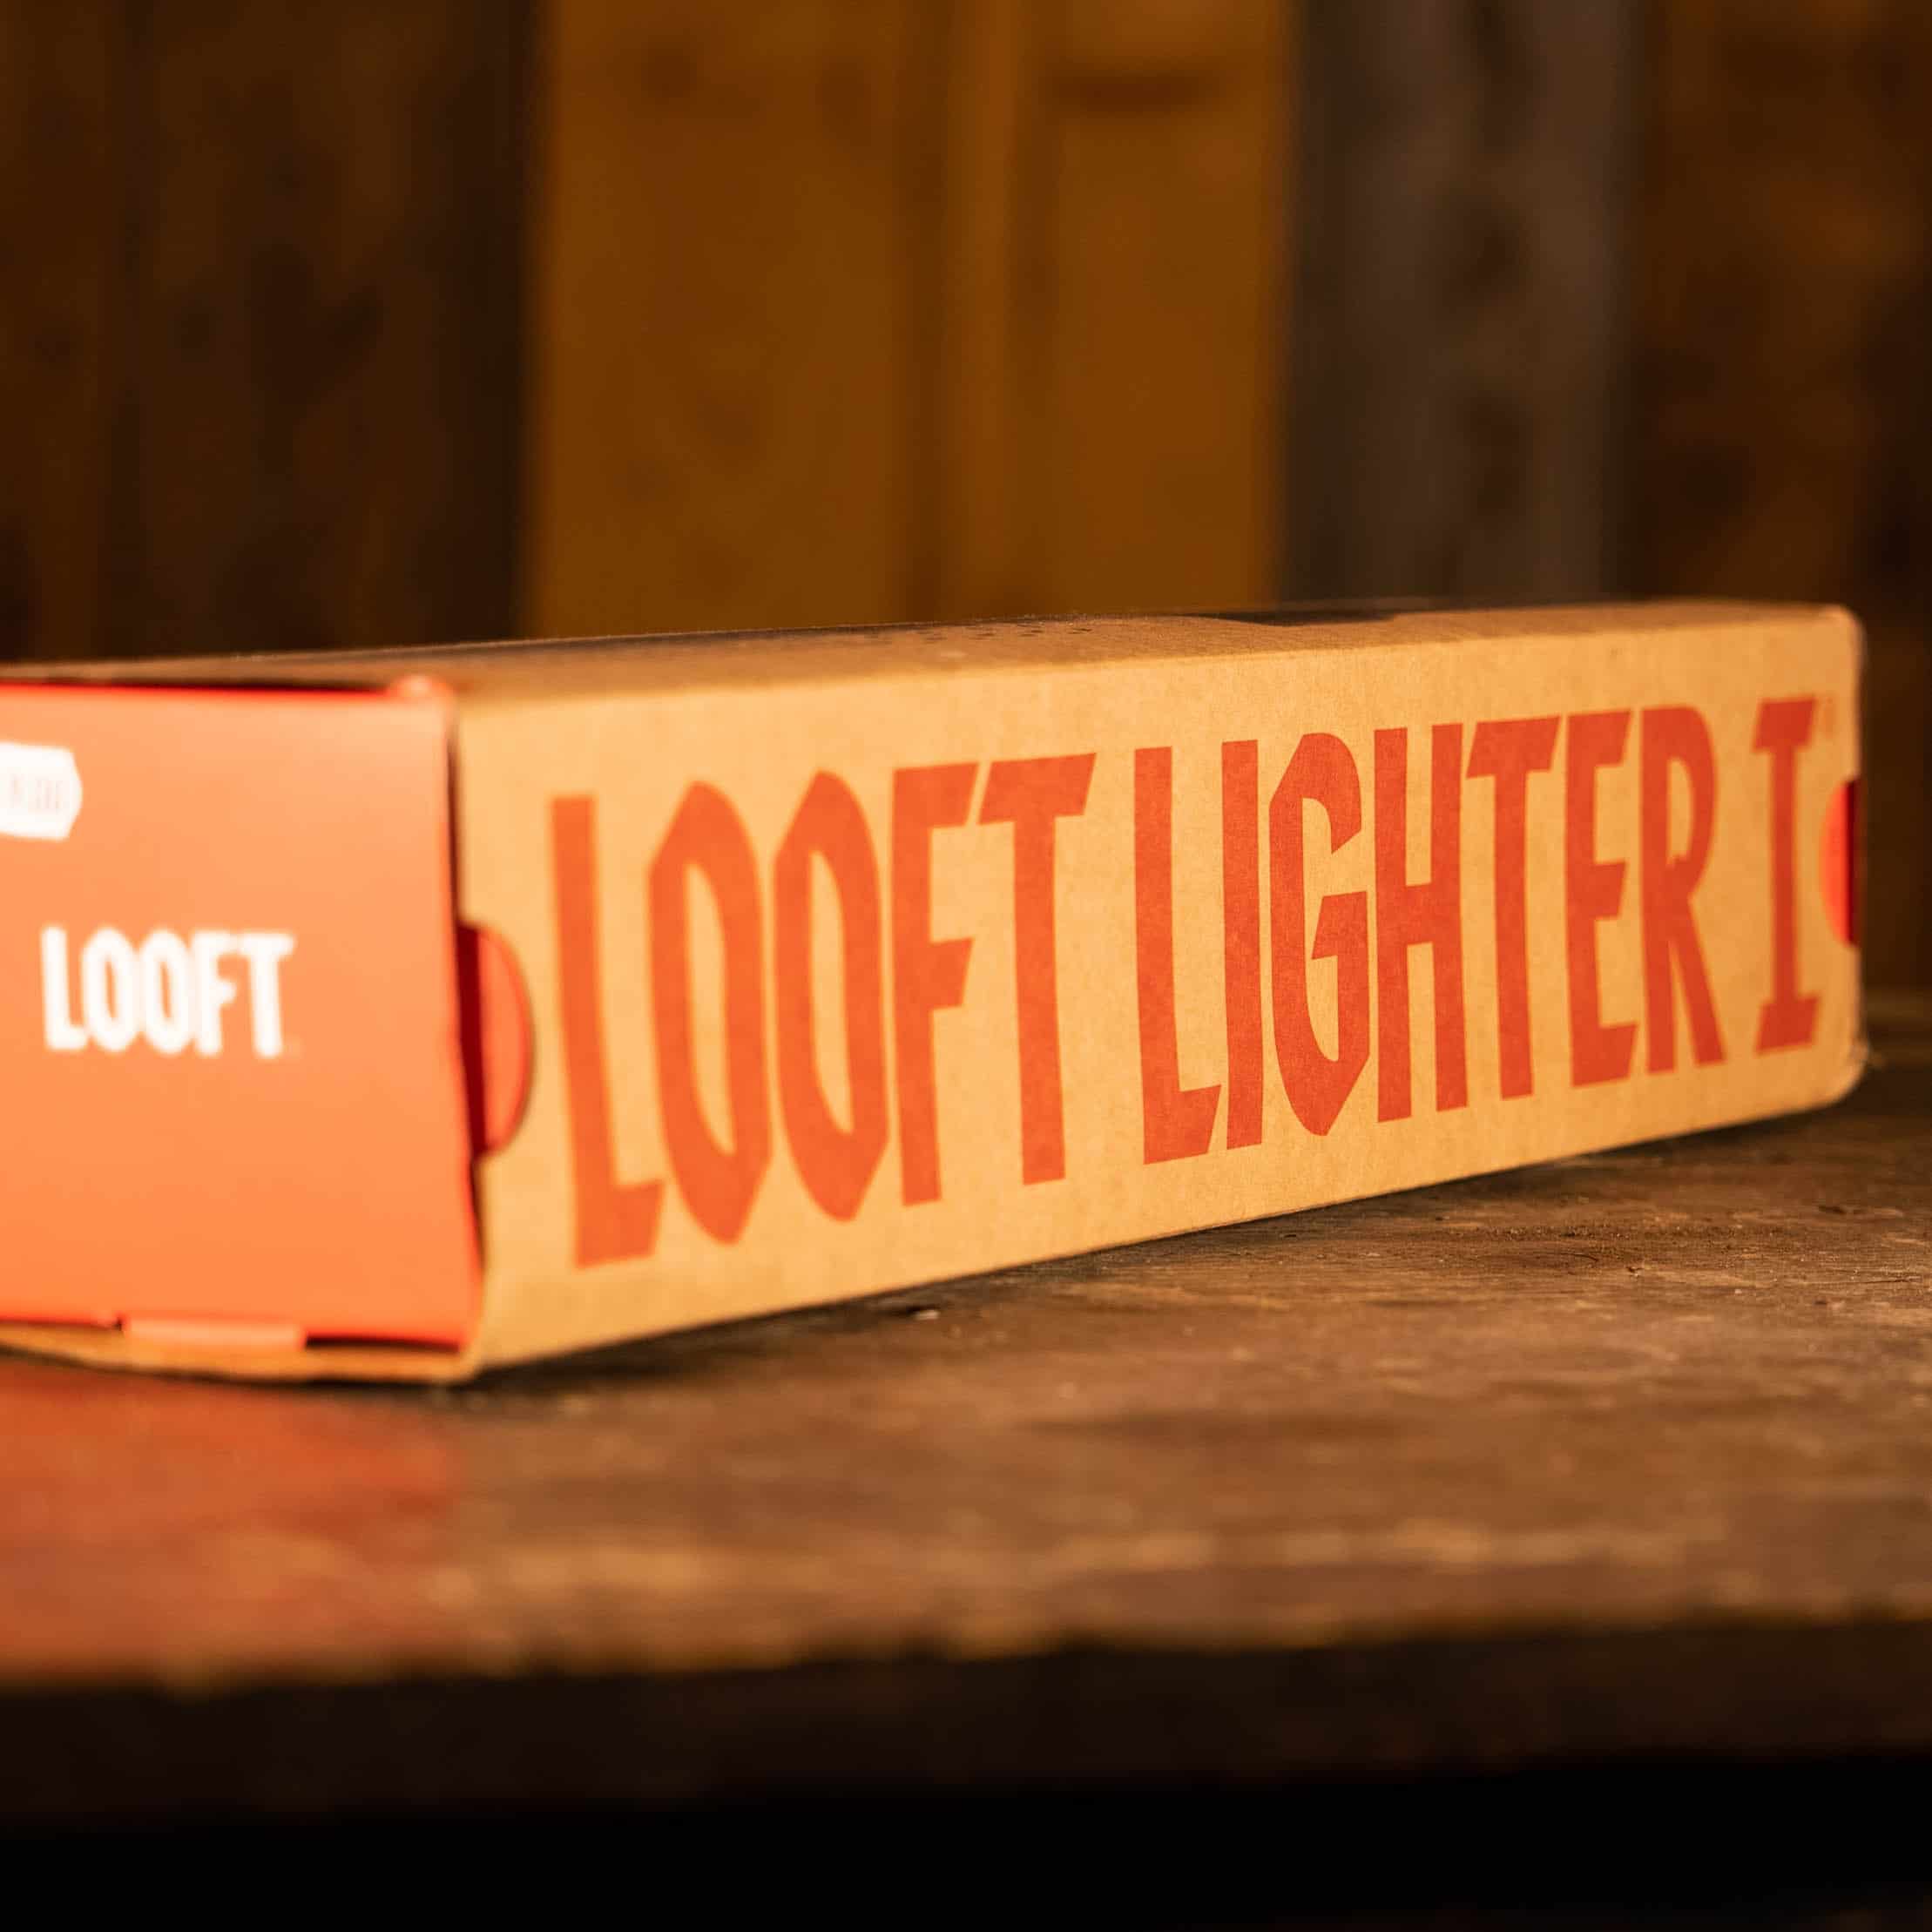 LooftLighter I